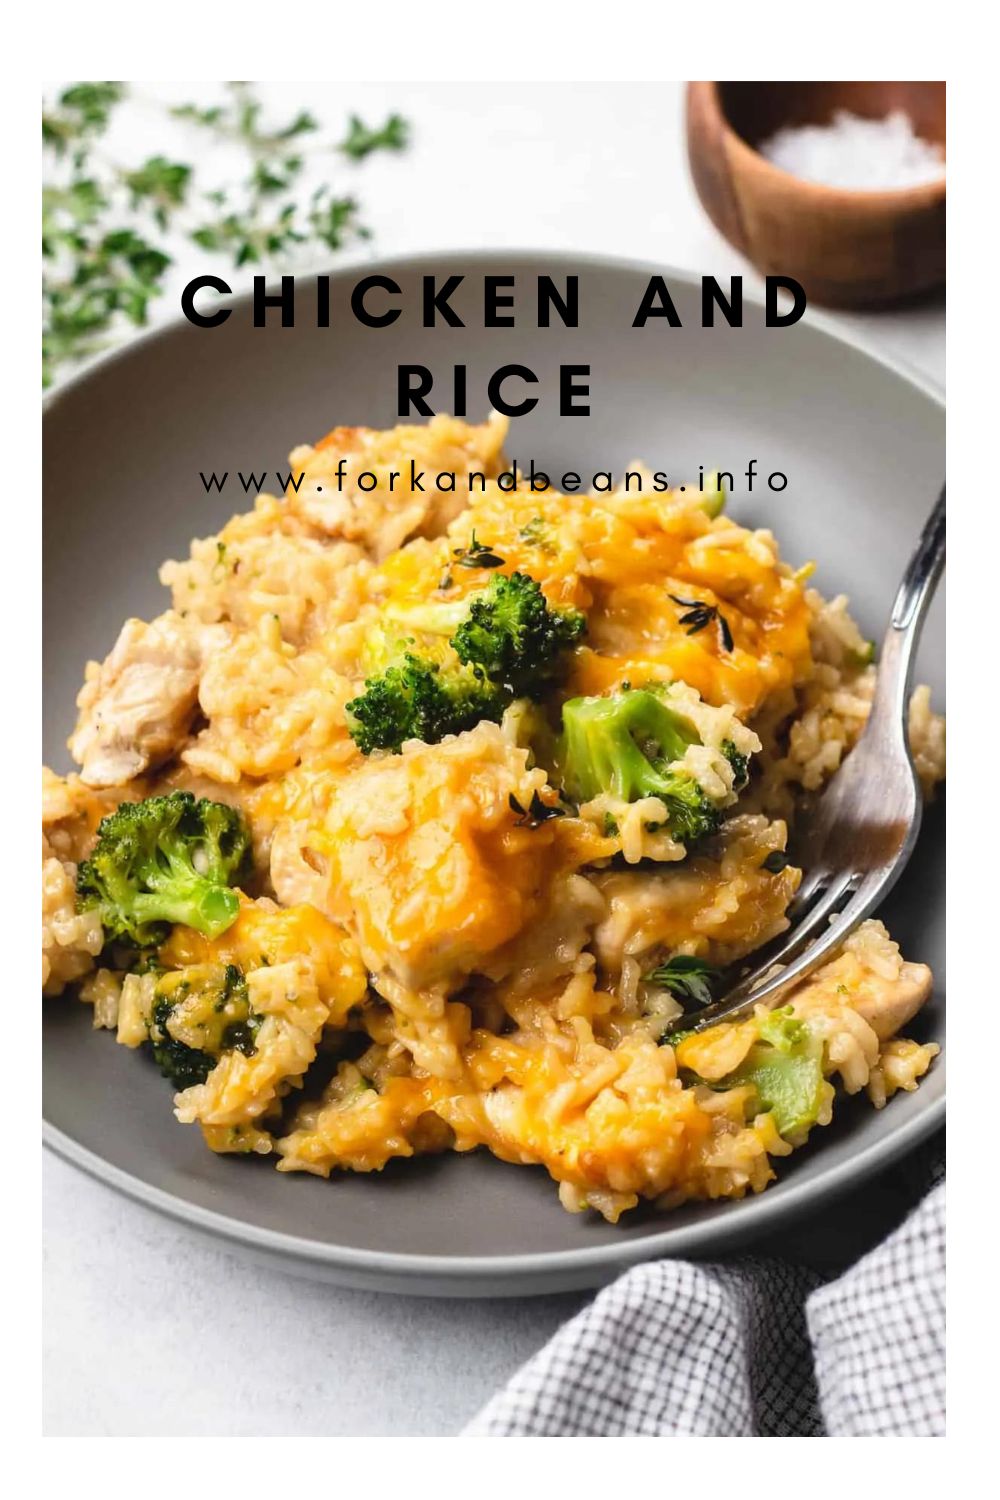 Cheesy Broccoli Chicken and Rice Casserole